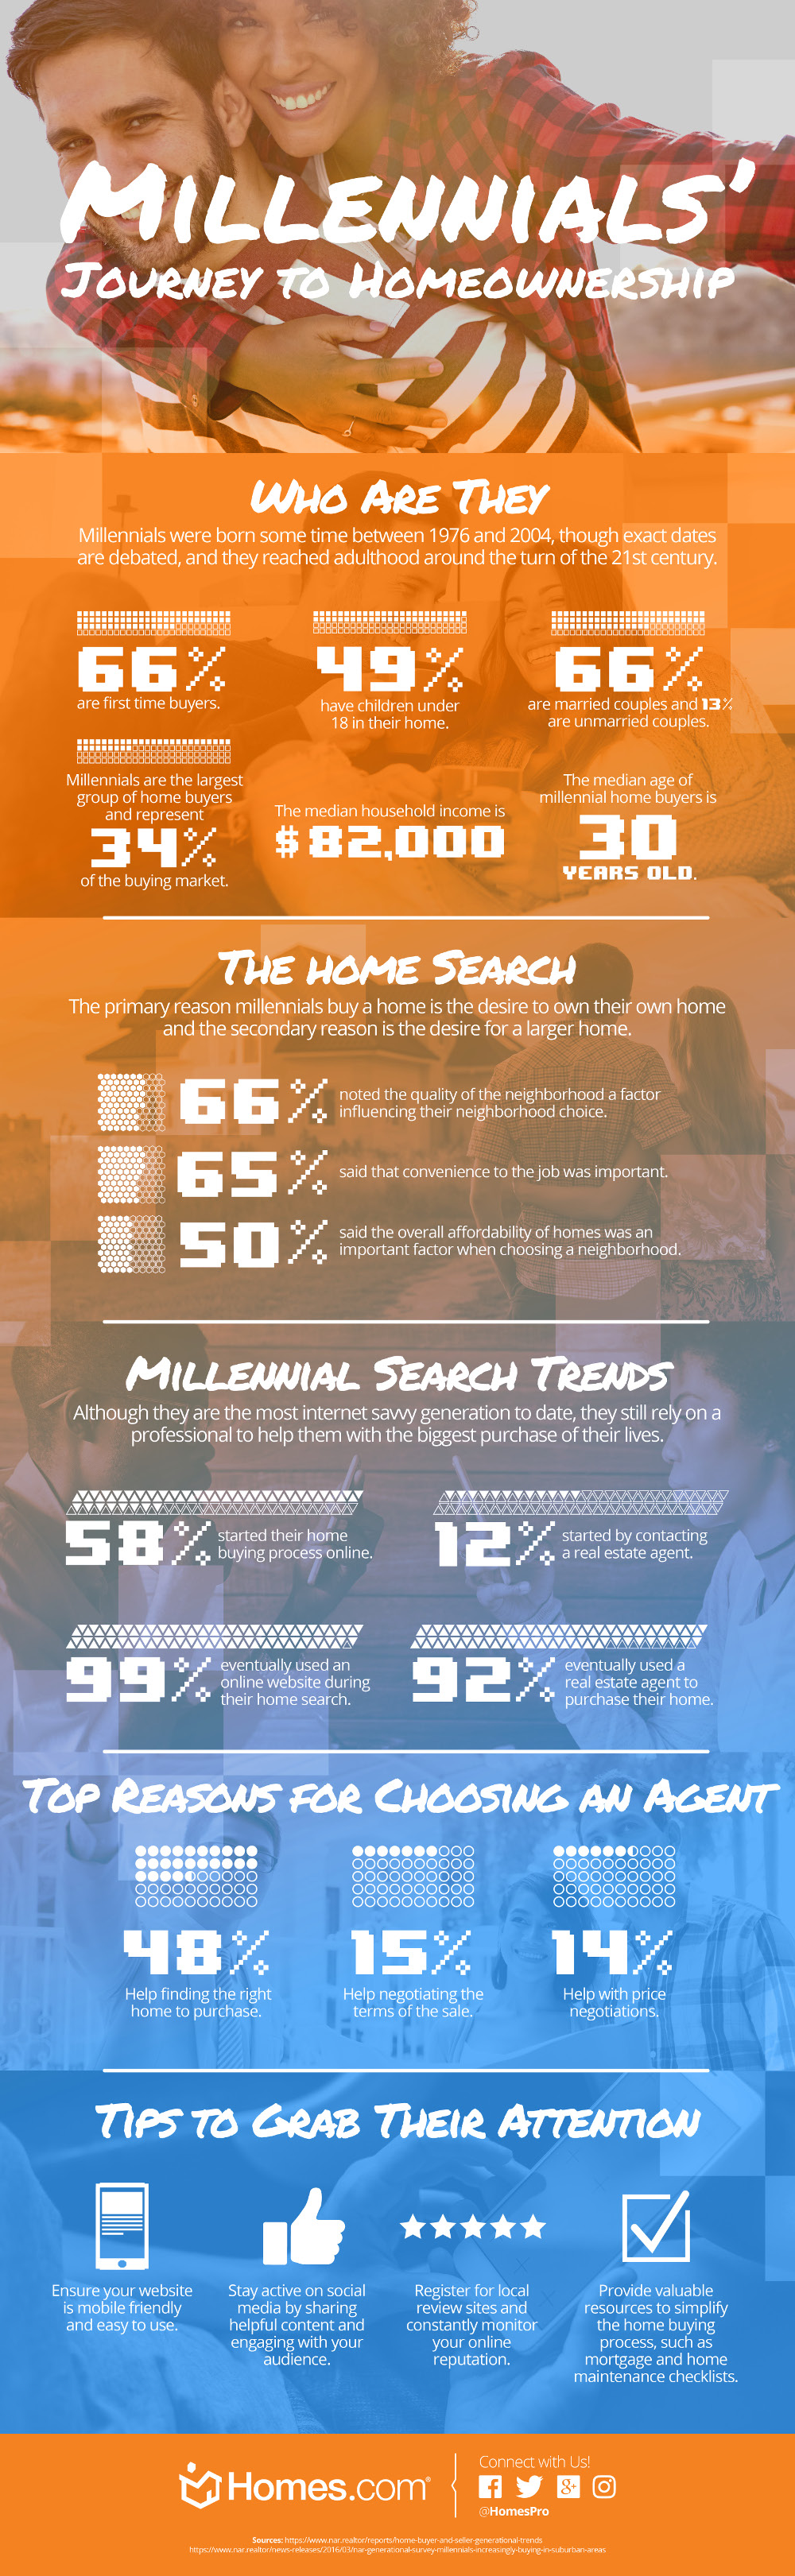 HDC Millennials Infographic 2791